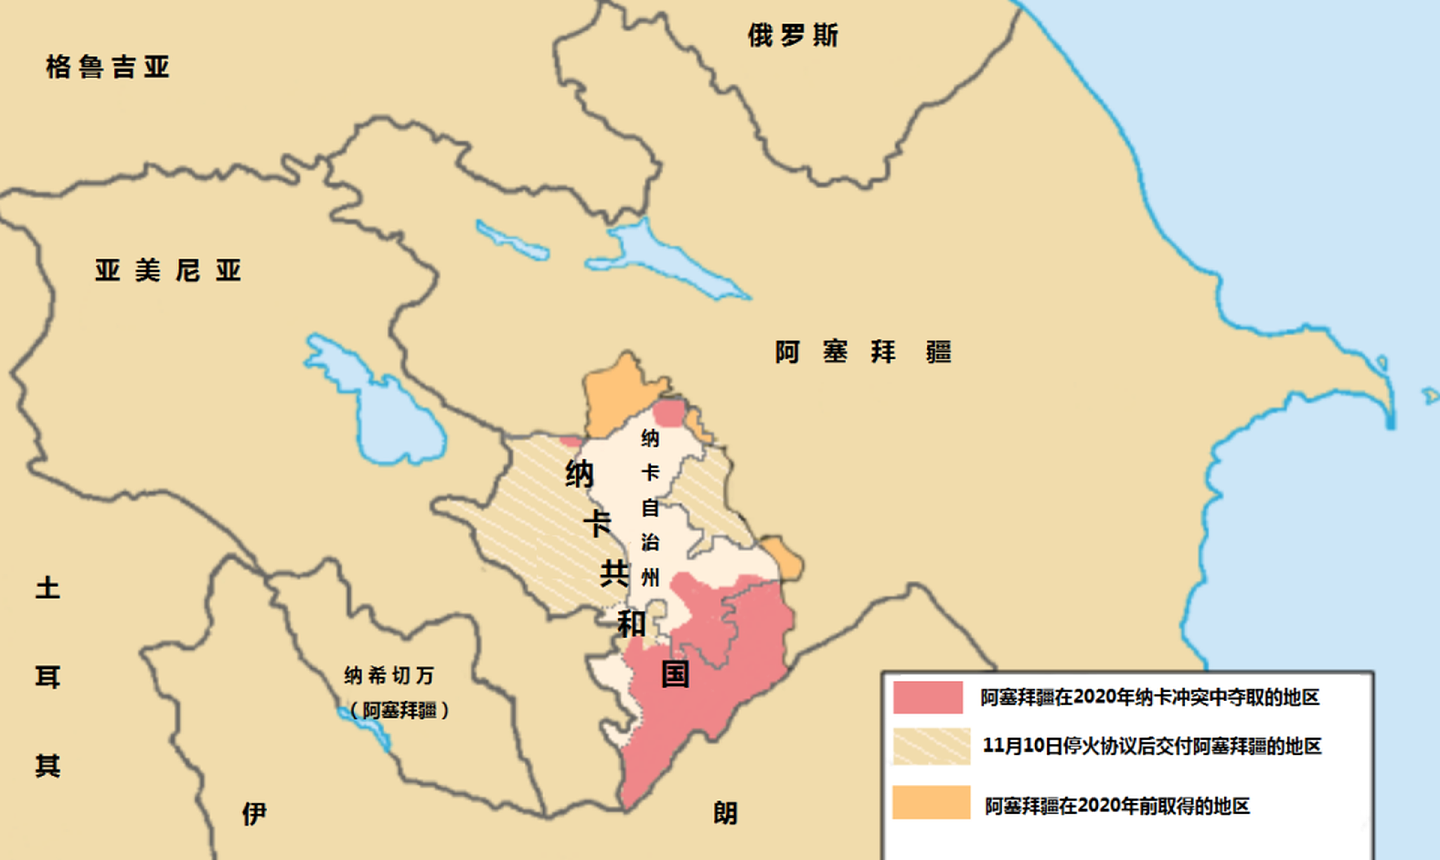 俄罗斯维和部队在2020年11月后进驻具备亚美尼亚领土地位的纳卡自治州，而其他亚、阿按协议交割的地区仍有大量飞地及未确认区域，这使得双方本应在2020年11月10日后交割的区域反而成为了一年后酝酿冲突的战场。（维基百科网页截图）